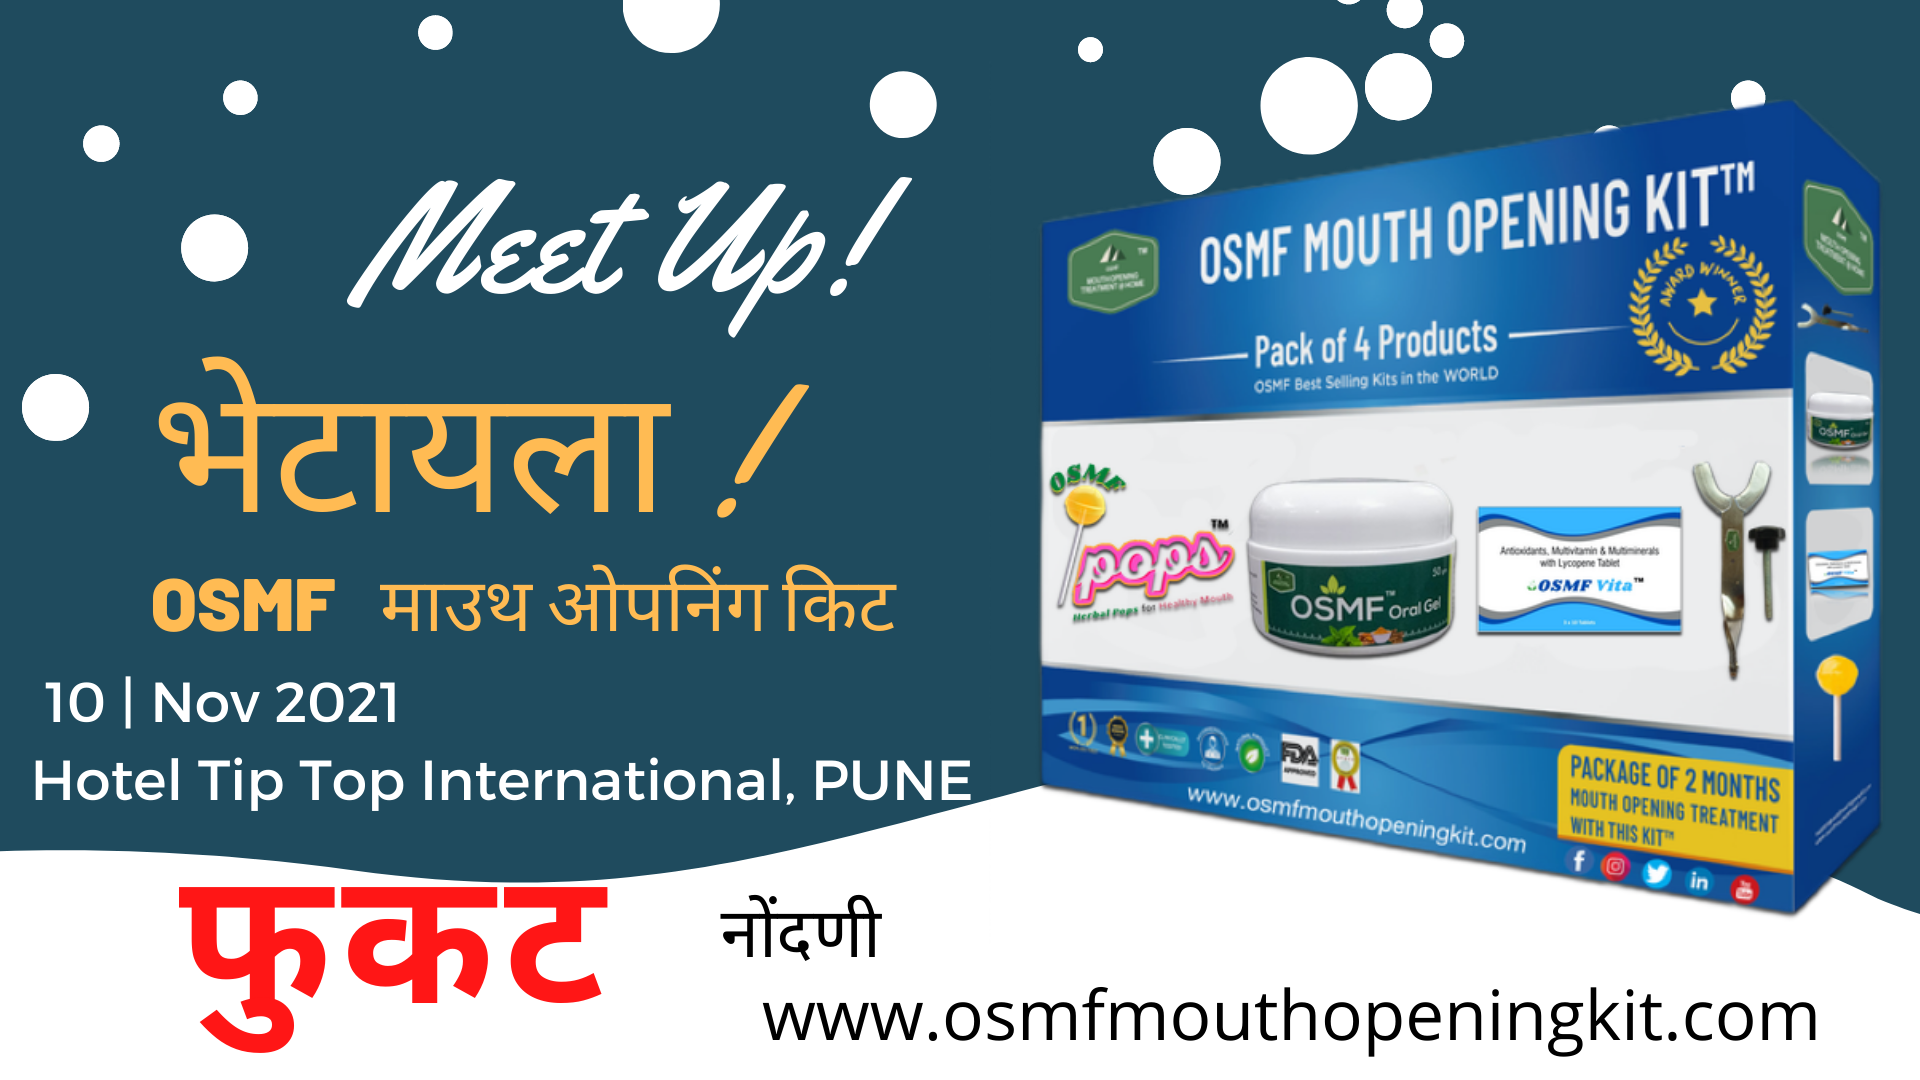 Mouth Opening Kit Pune Maharashtra